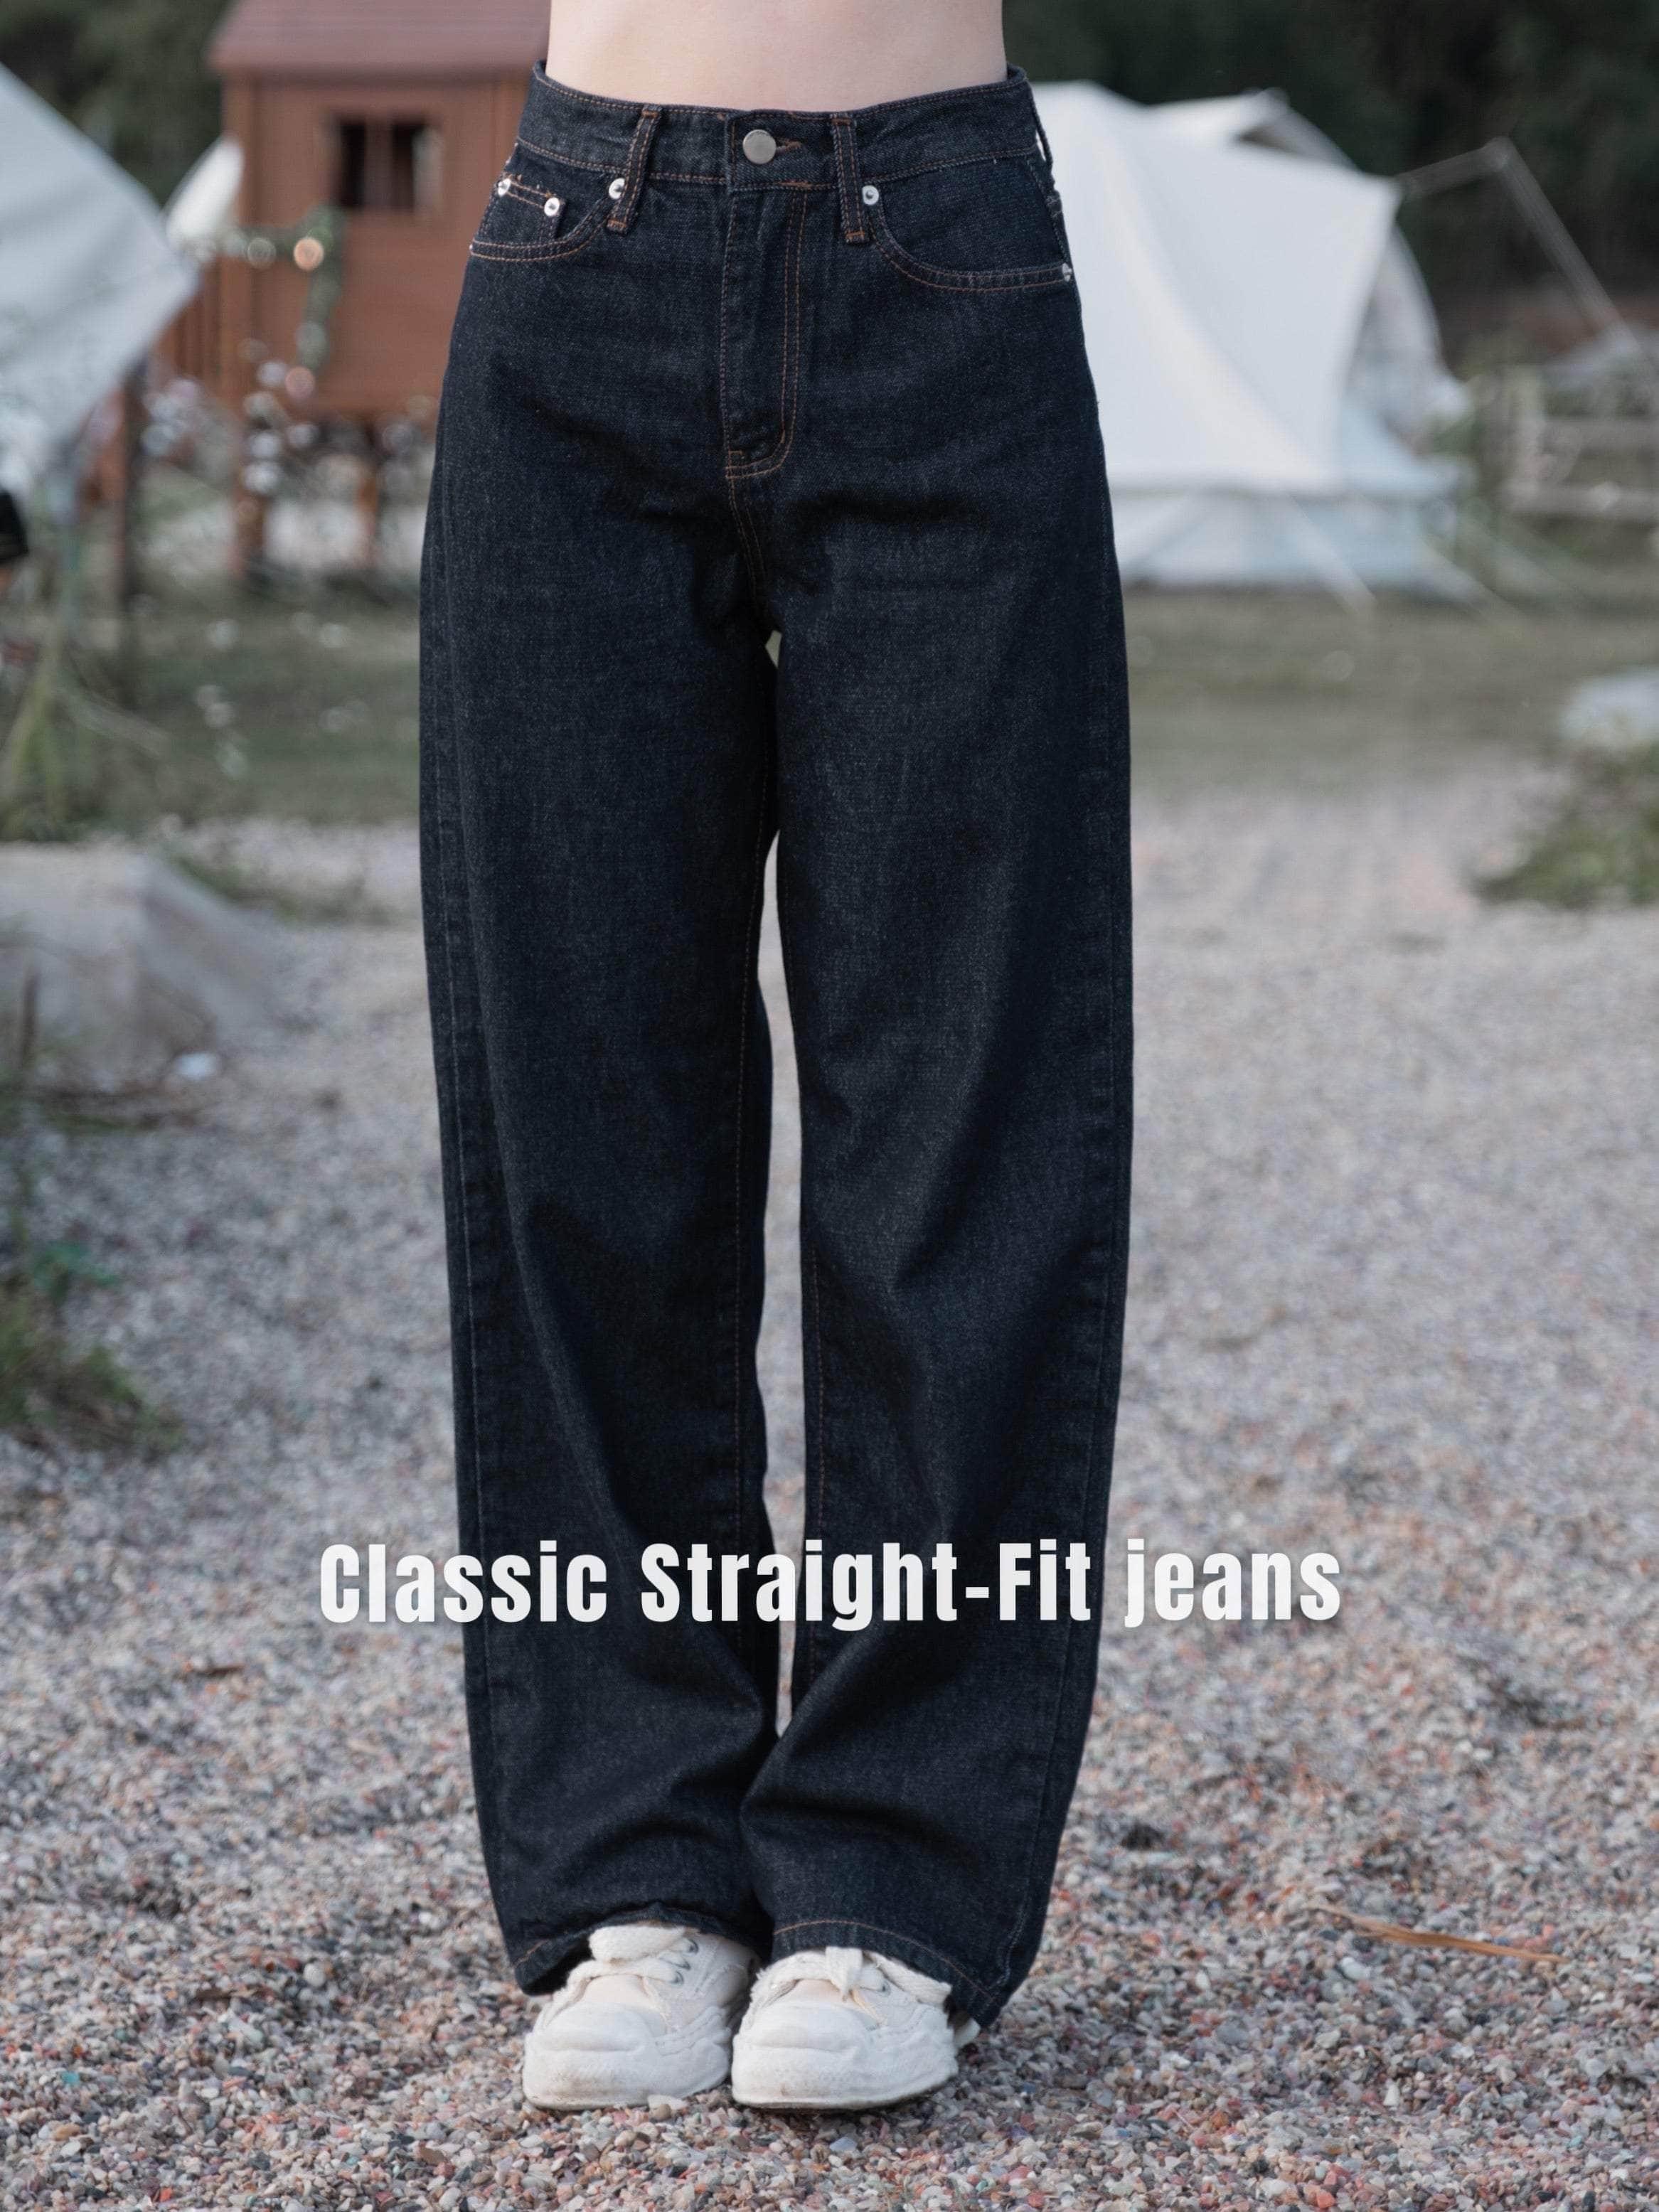 韓國服飾 牛仔長褲韓國 ❤️DAY 1 SUMMER Early bird🇰🇷Classic Straight-Fit jeans